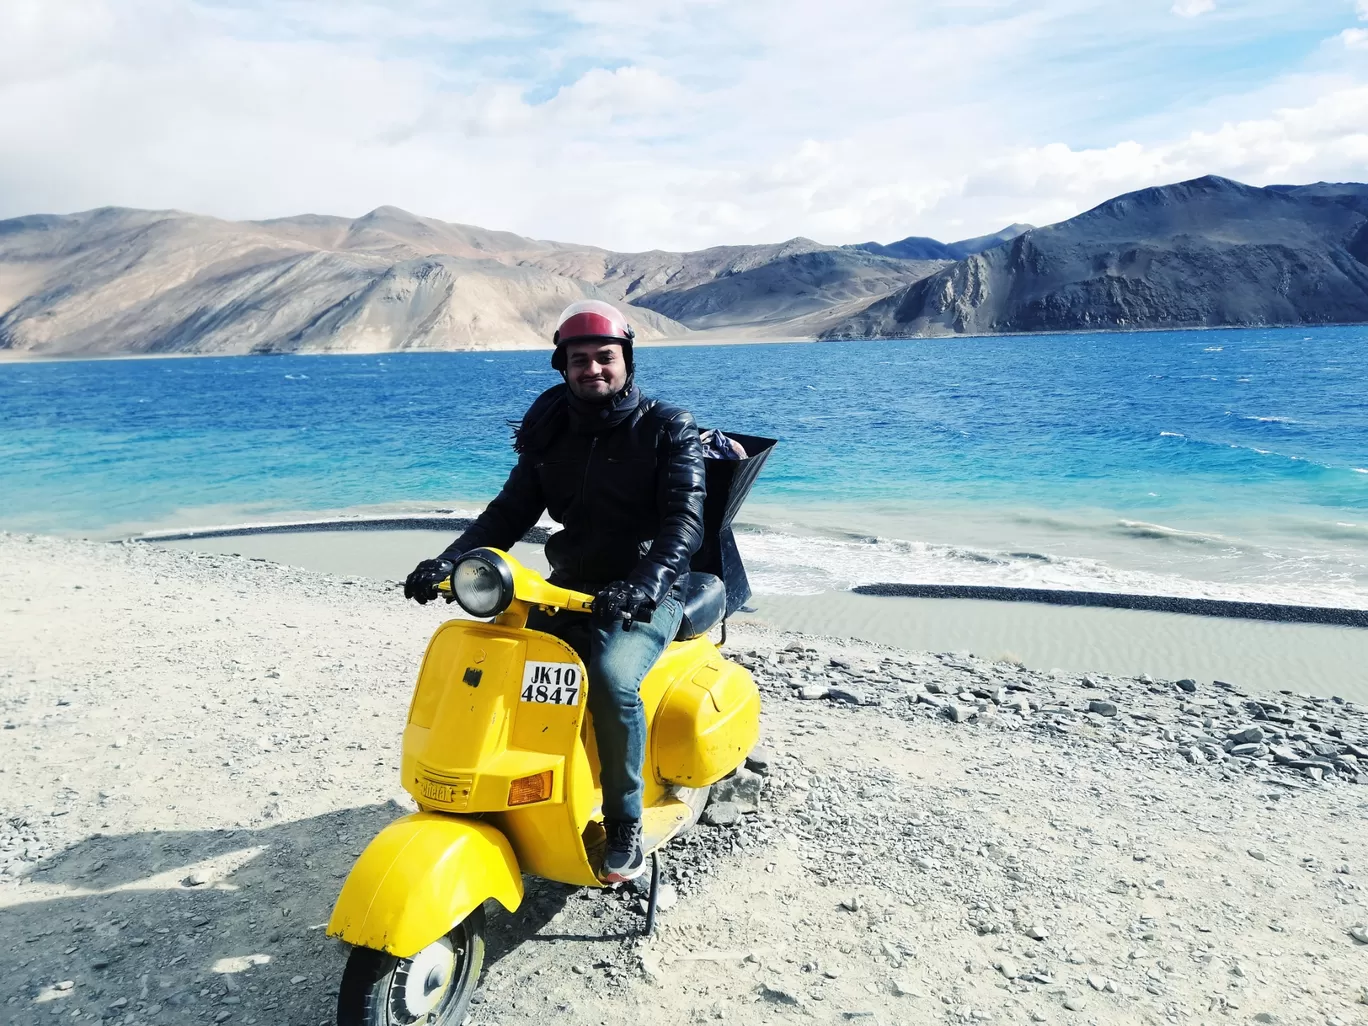 Photo of Ladakh By Ajit Dagar